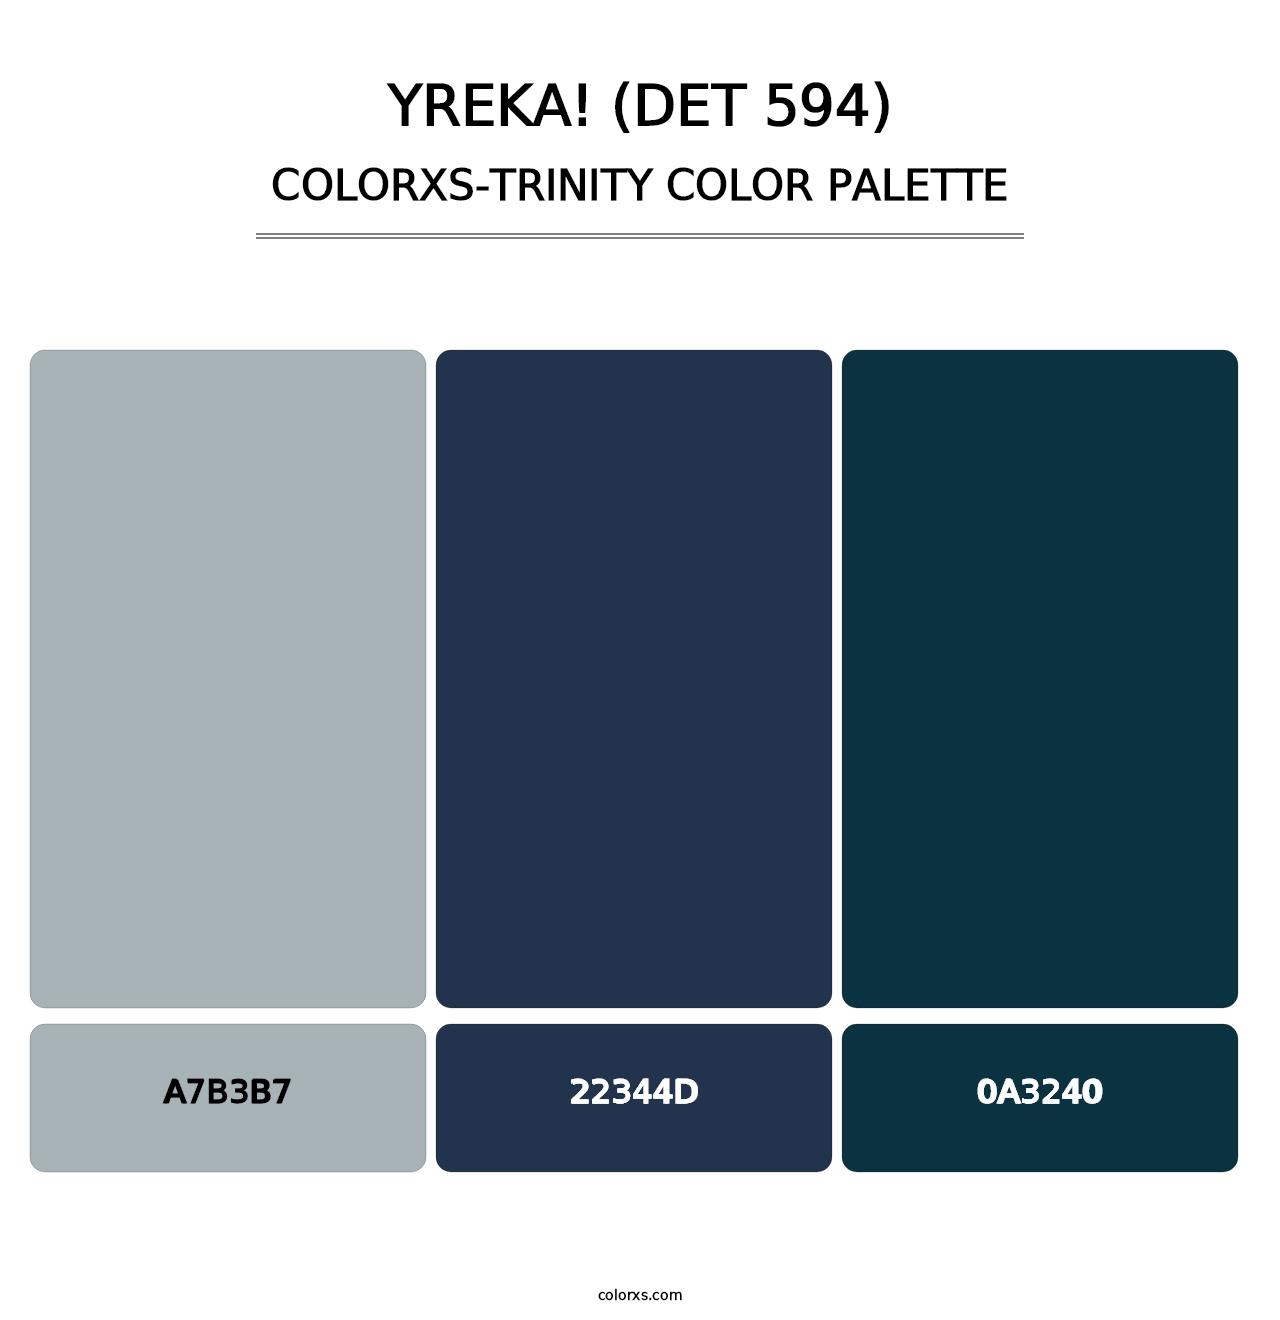 Yreka! (DET 594) - Colorxs Trinity Palette